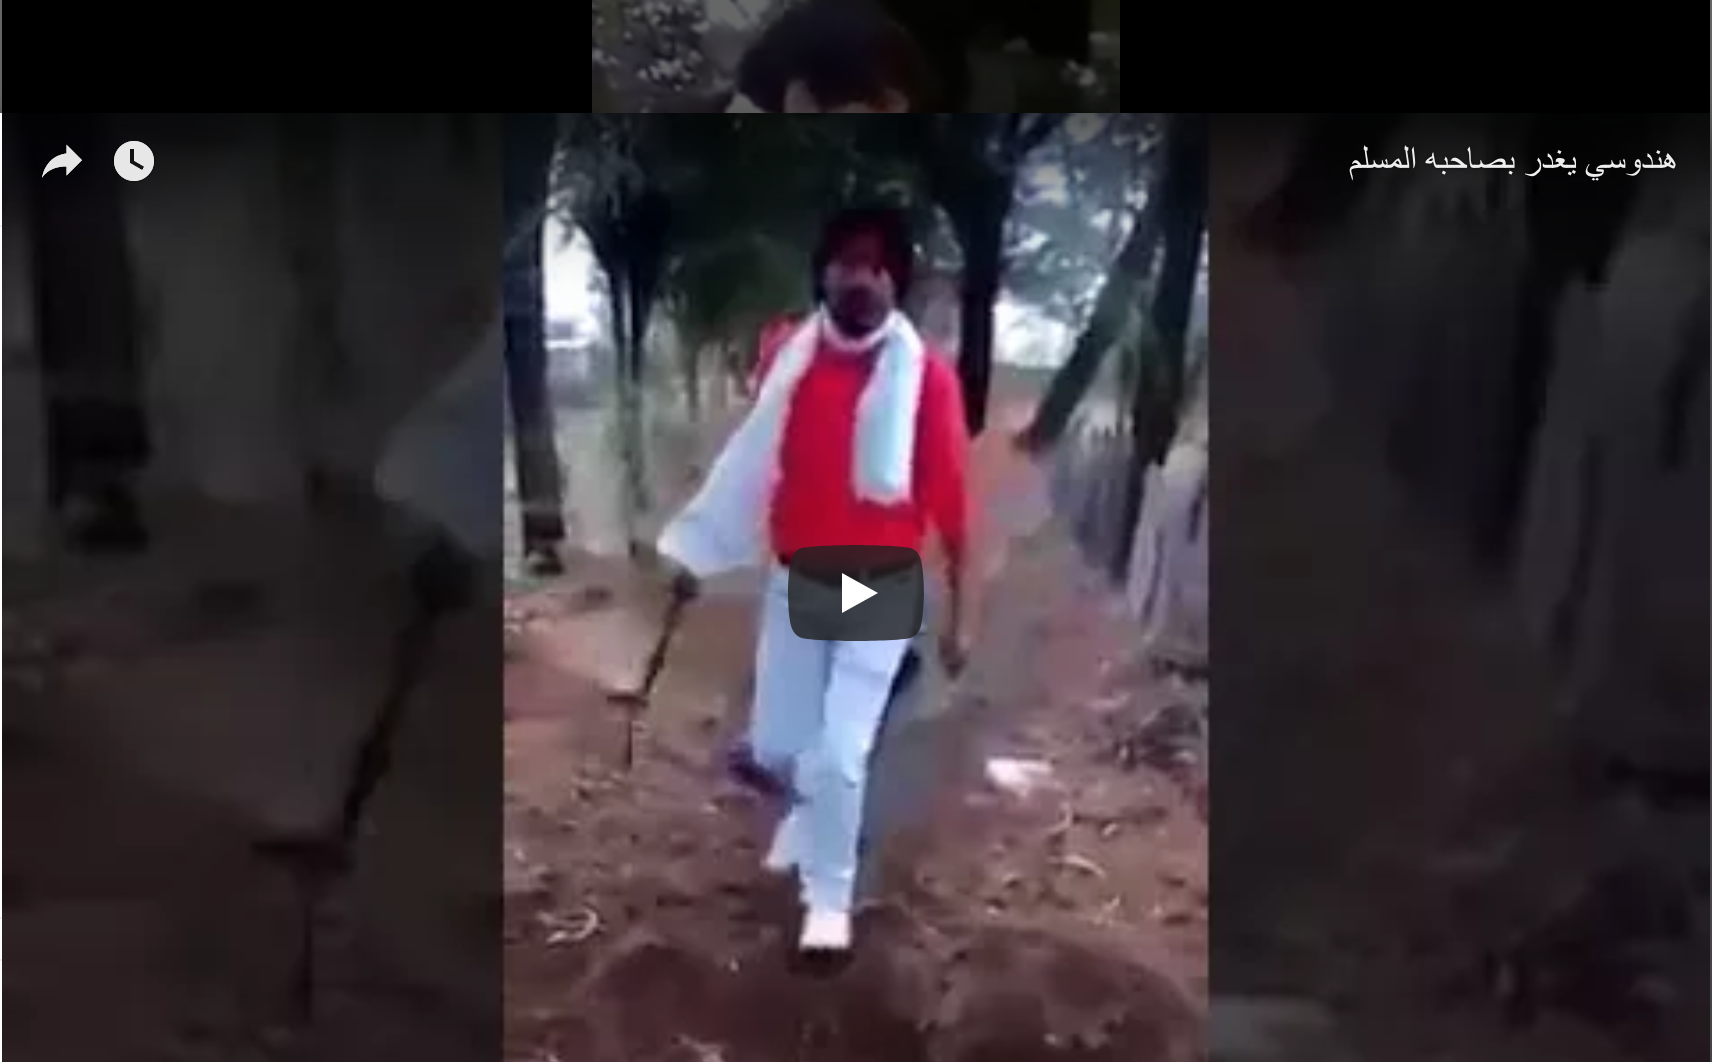 شاهد الفيديو قبل الحذف وممنوع الدخول لاصحاب القلوب الضعيفة وأقل من 18 سنة هندوسي هندي يقتل صديقه المسلم الهندي بدم بارد أنه مسلم